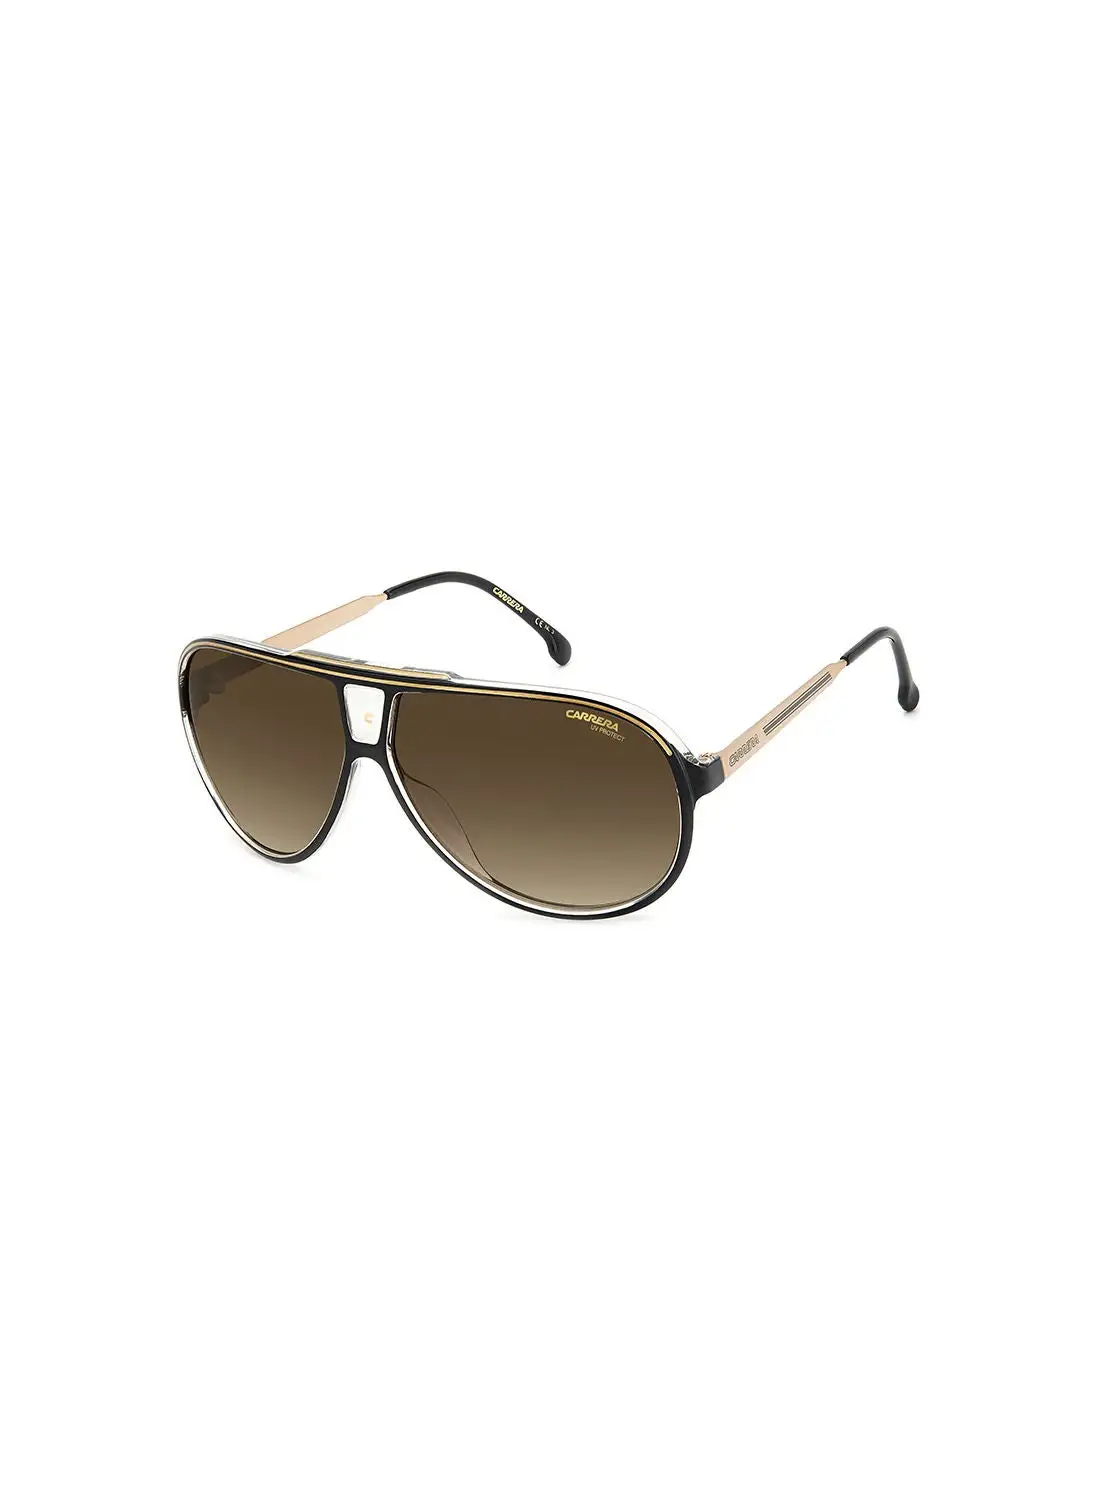 Carrera Men's UV Protection Pilot Sunglasses - Carrera 1050/S Blk Gold 63 - Lens Size: 63 Mm